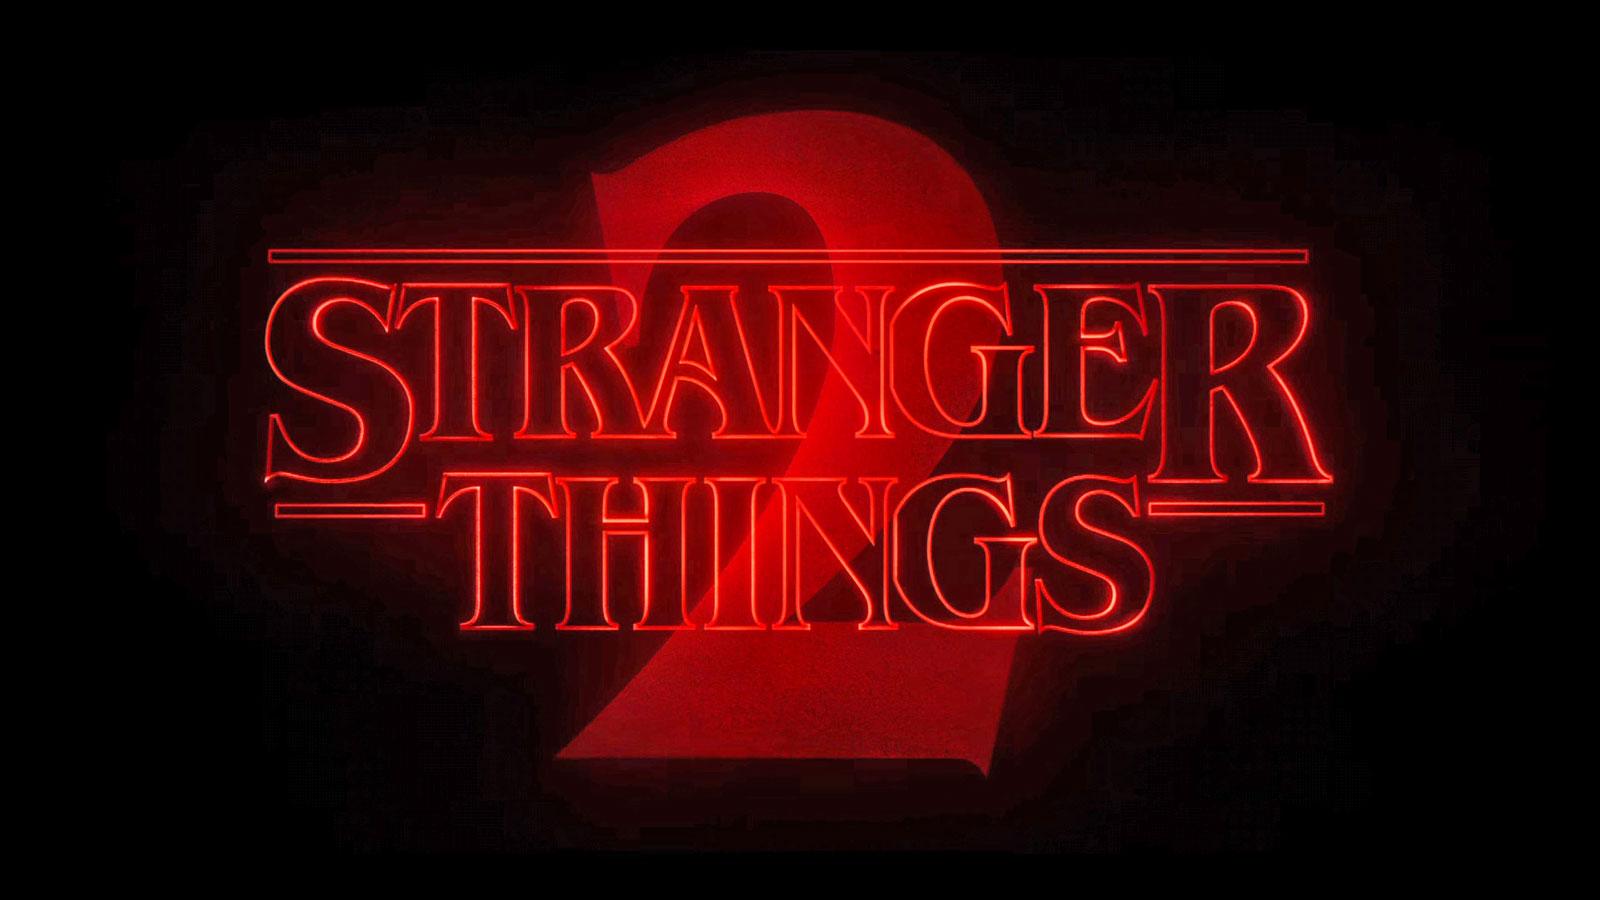 Stranger Things’in 2. Sezon Fragmanında Barış Manço Şarkısı Kullanıldı